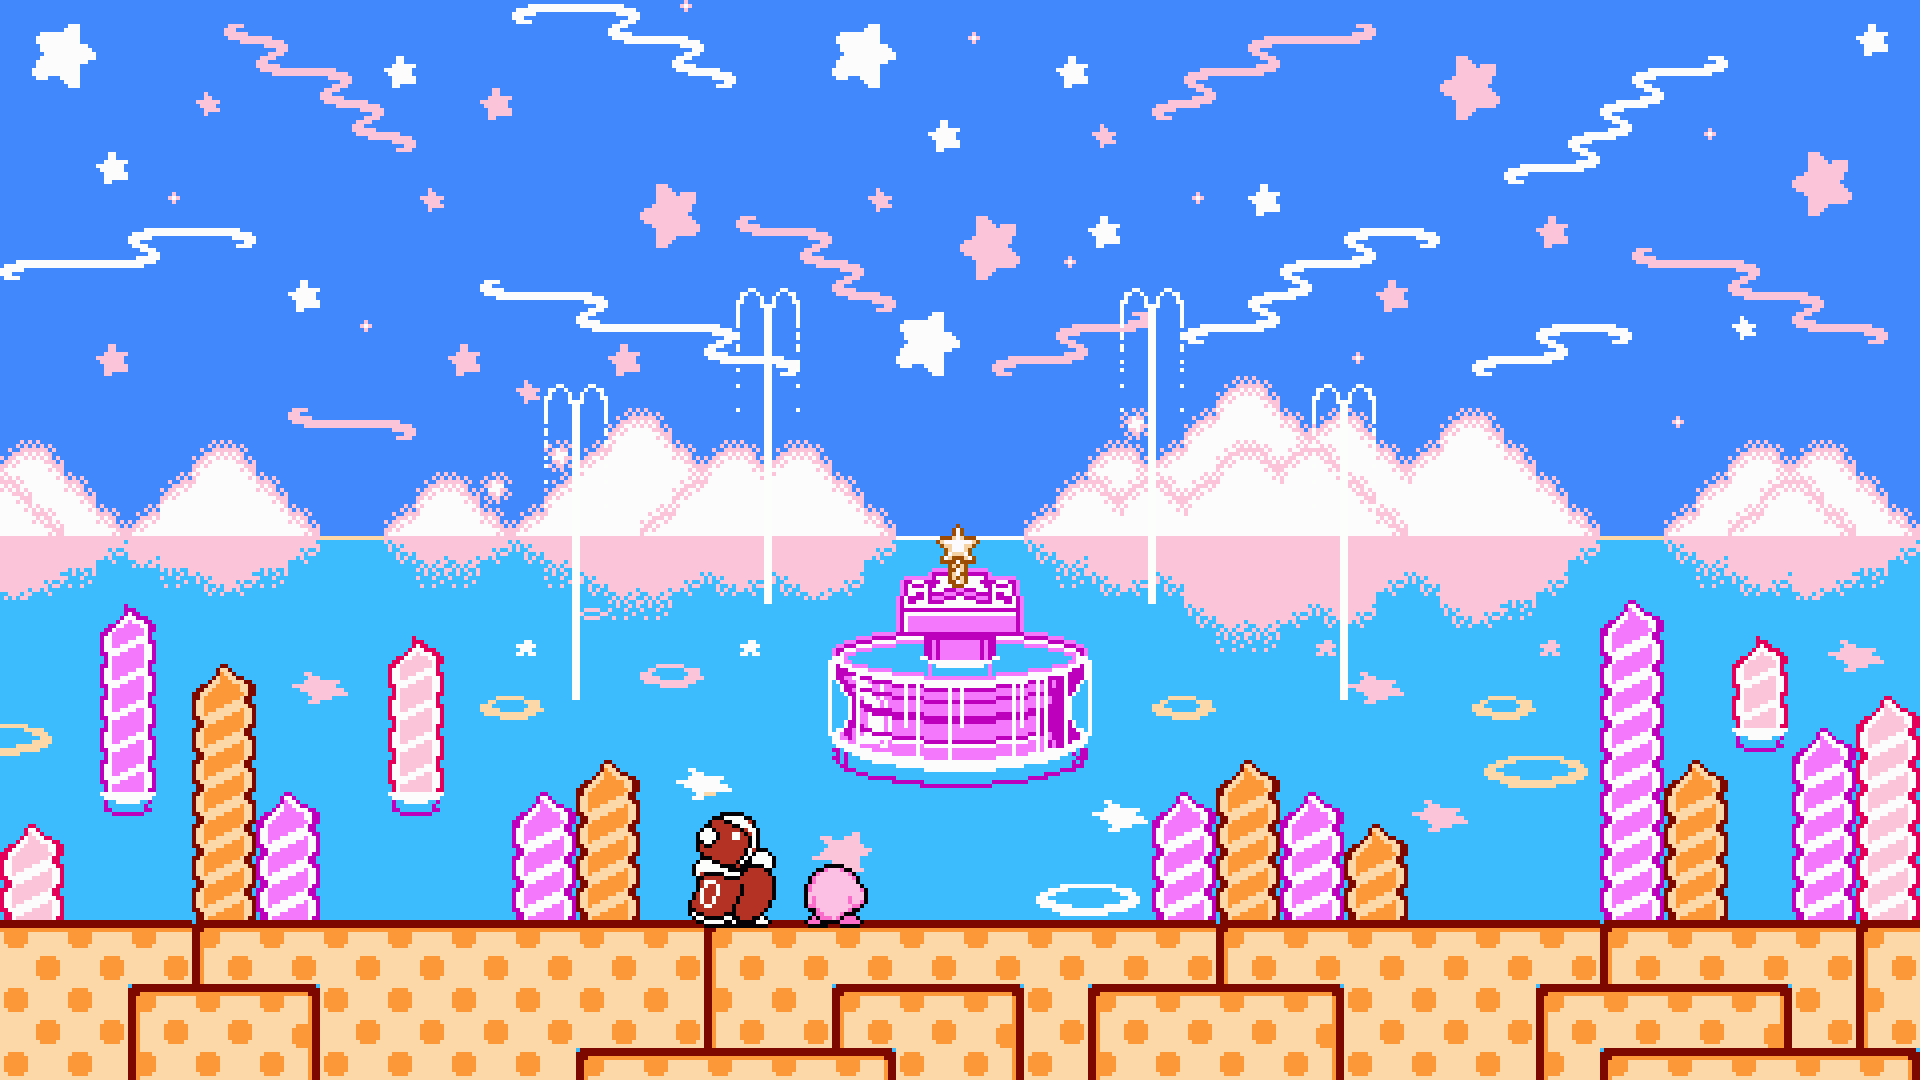 Hãy đắm mình trong Kirby\'s Adventure và khám phá vương quốc Dream Land với Kirby. Tựa game này không chỉ sở hữu đồ họa tuyệt đẹp mà còn mang đến những trải nghiệm vô cùng thú vị. Với nhiều cấp độ khác nhau, bạn sẽ không bao giờ thấy nhàm chán khi tham gia chơi trò này.